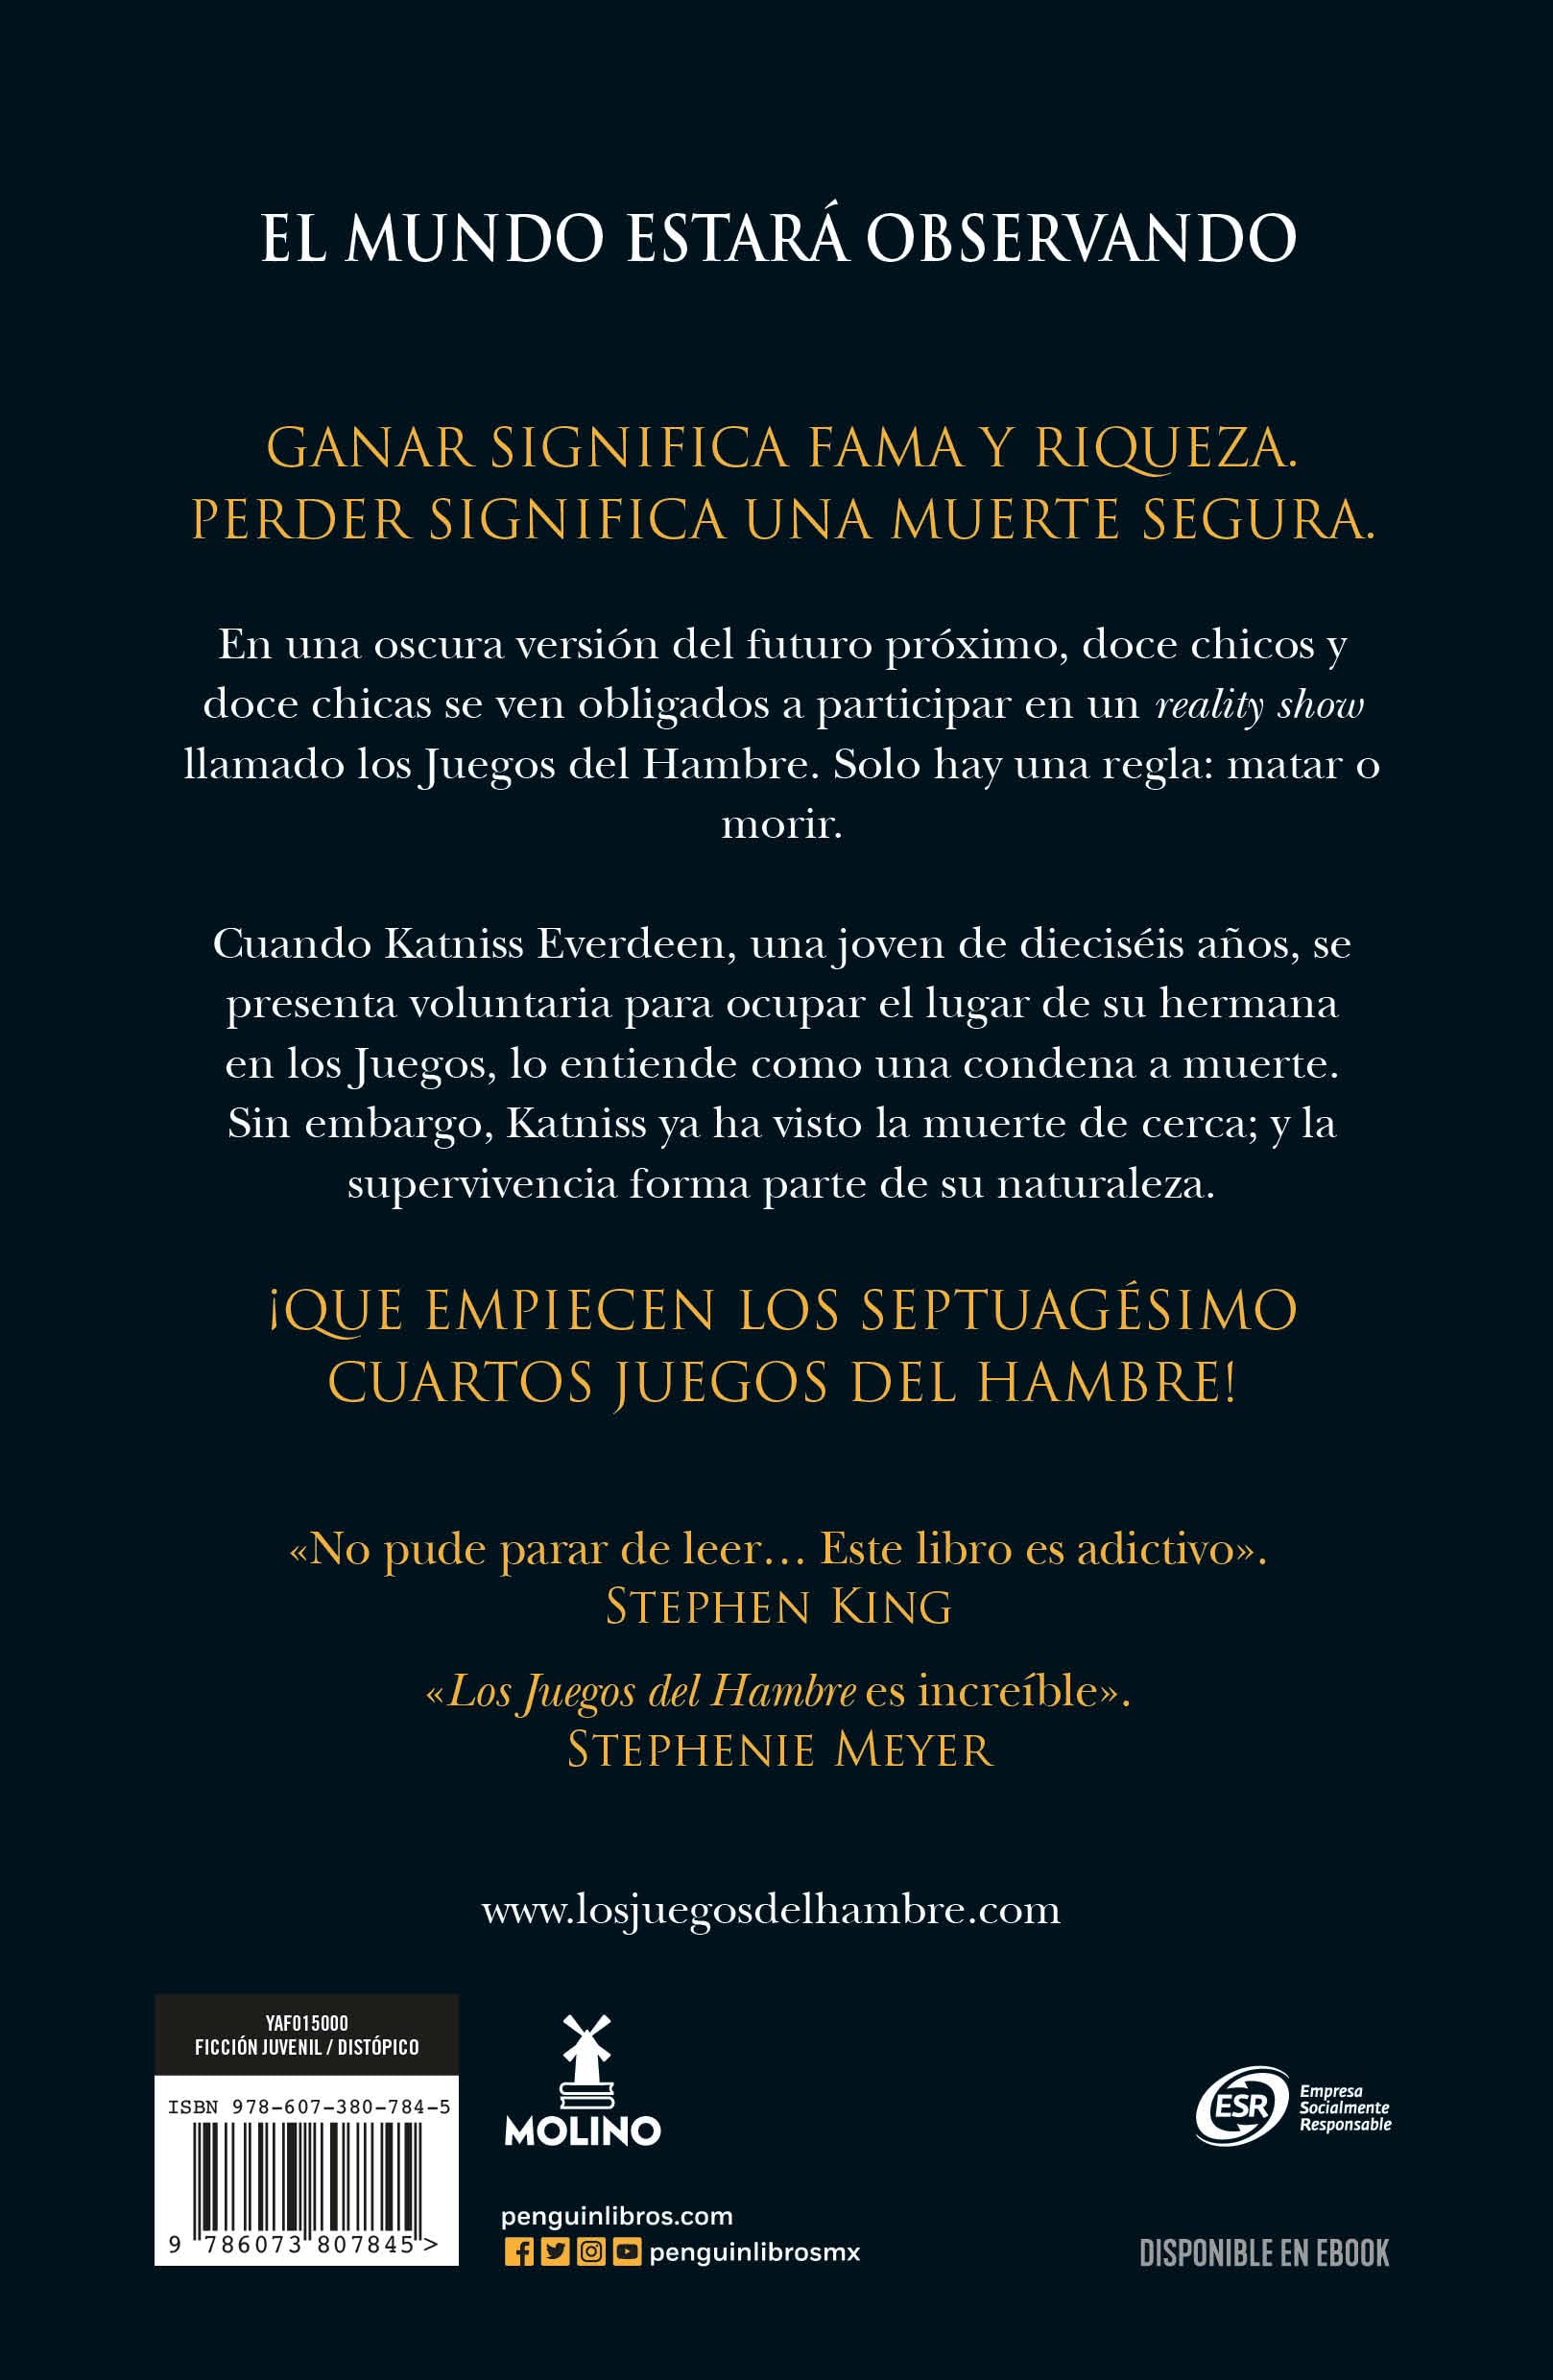 Los juegos del hambre (Spanish Edition)